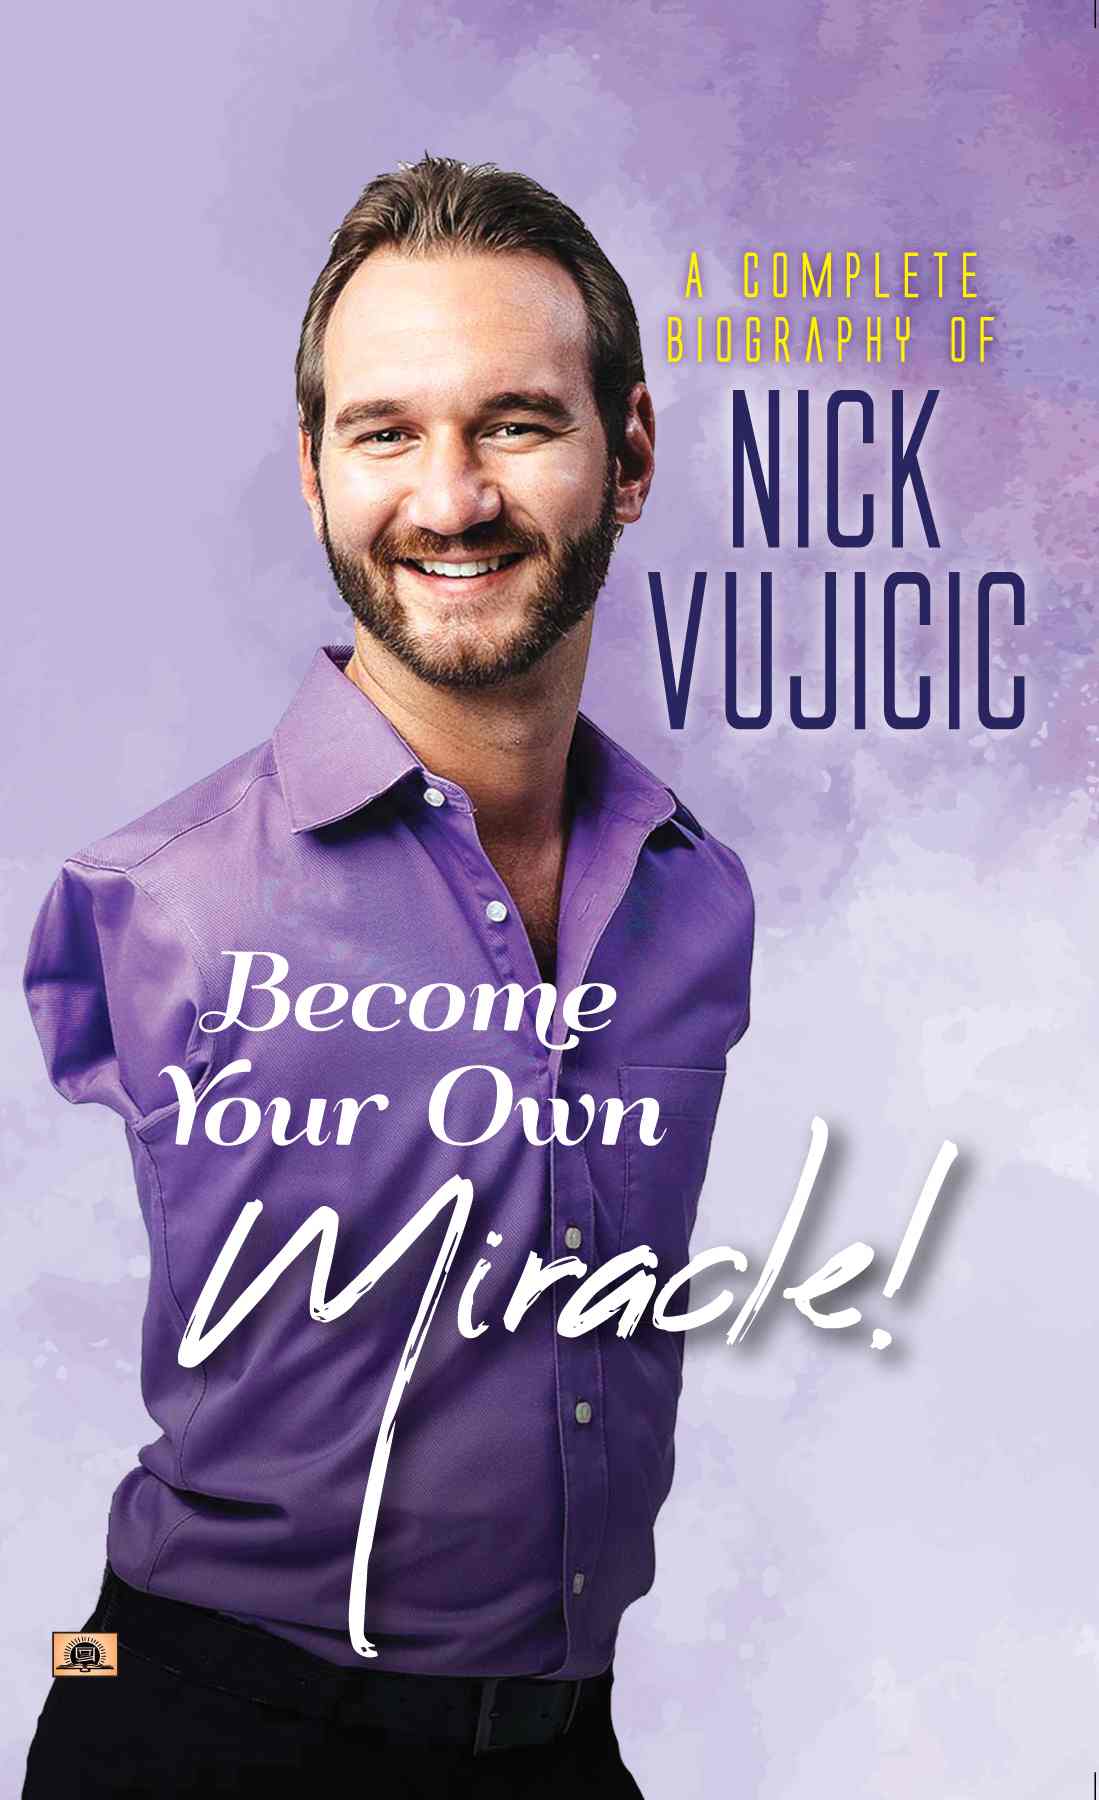 biography about nick vujicic